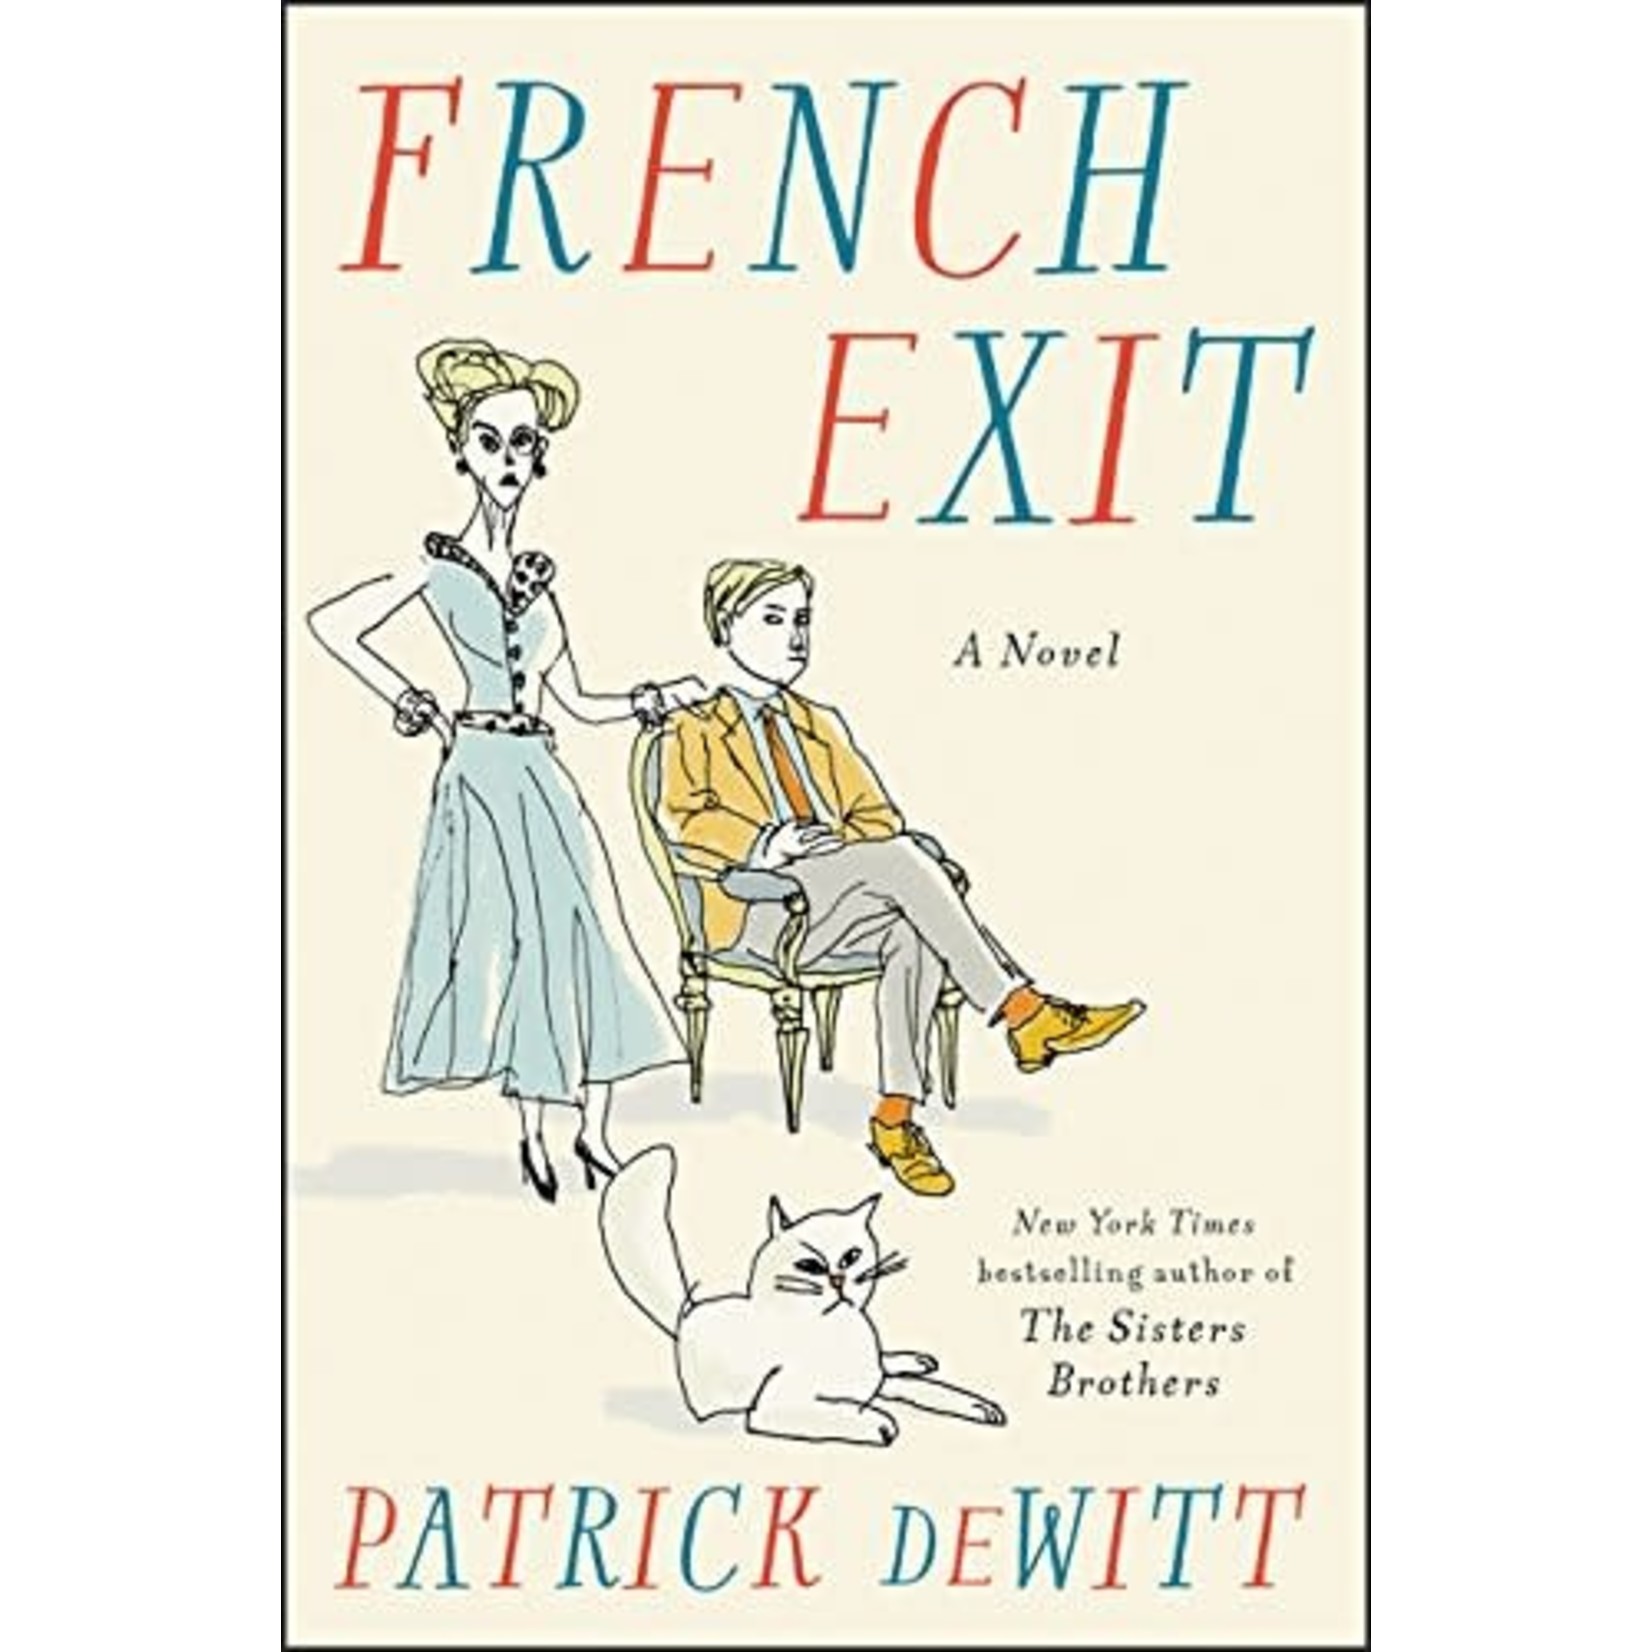 deWitt, Patrick DeWitt, Patrick - French Exit